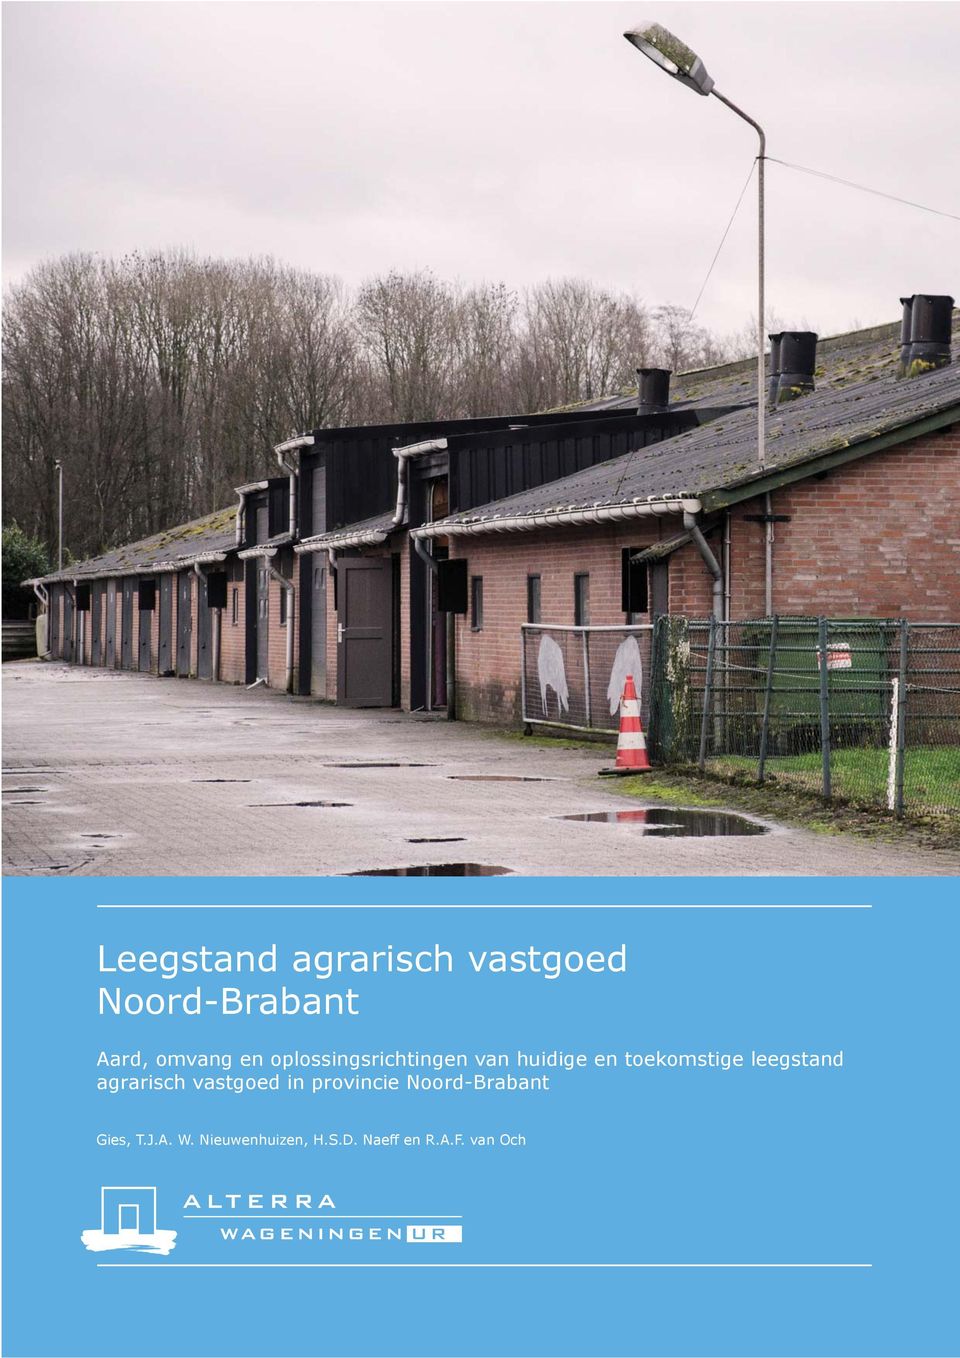 leegstand agrarisch vastgoed in provincie Noord-Brabant